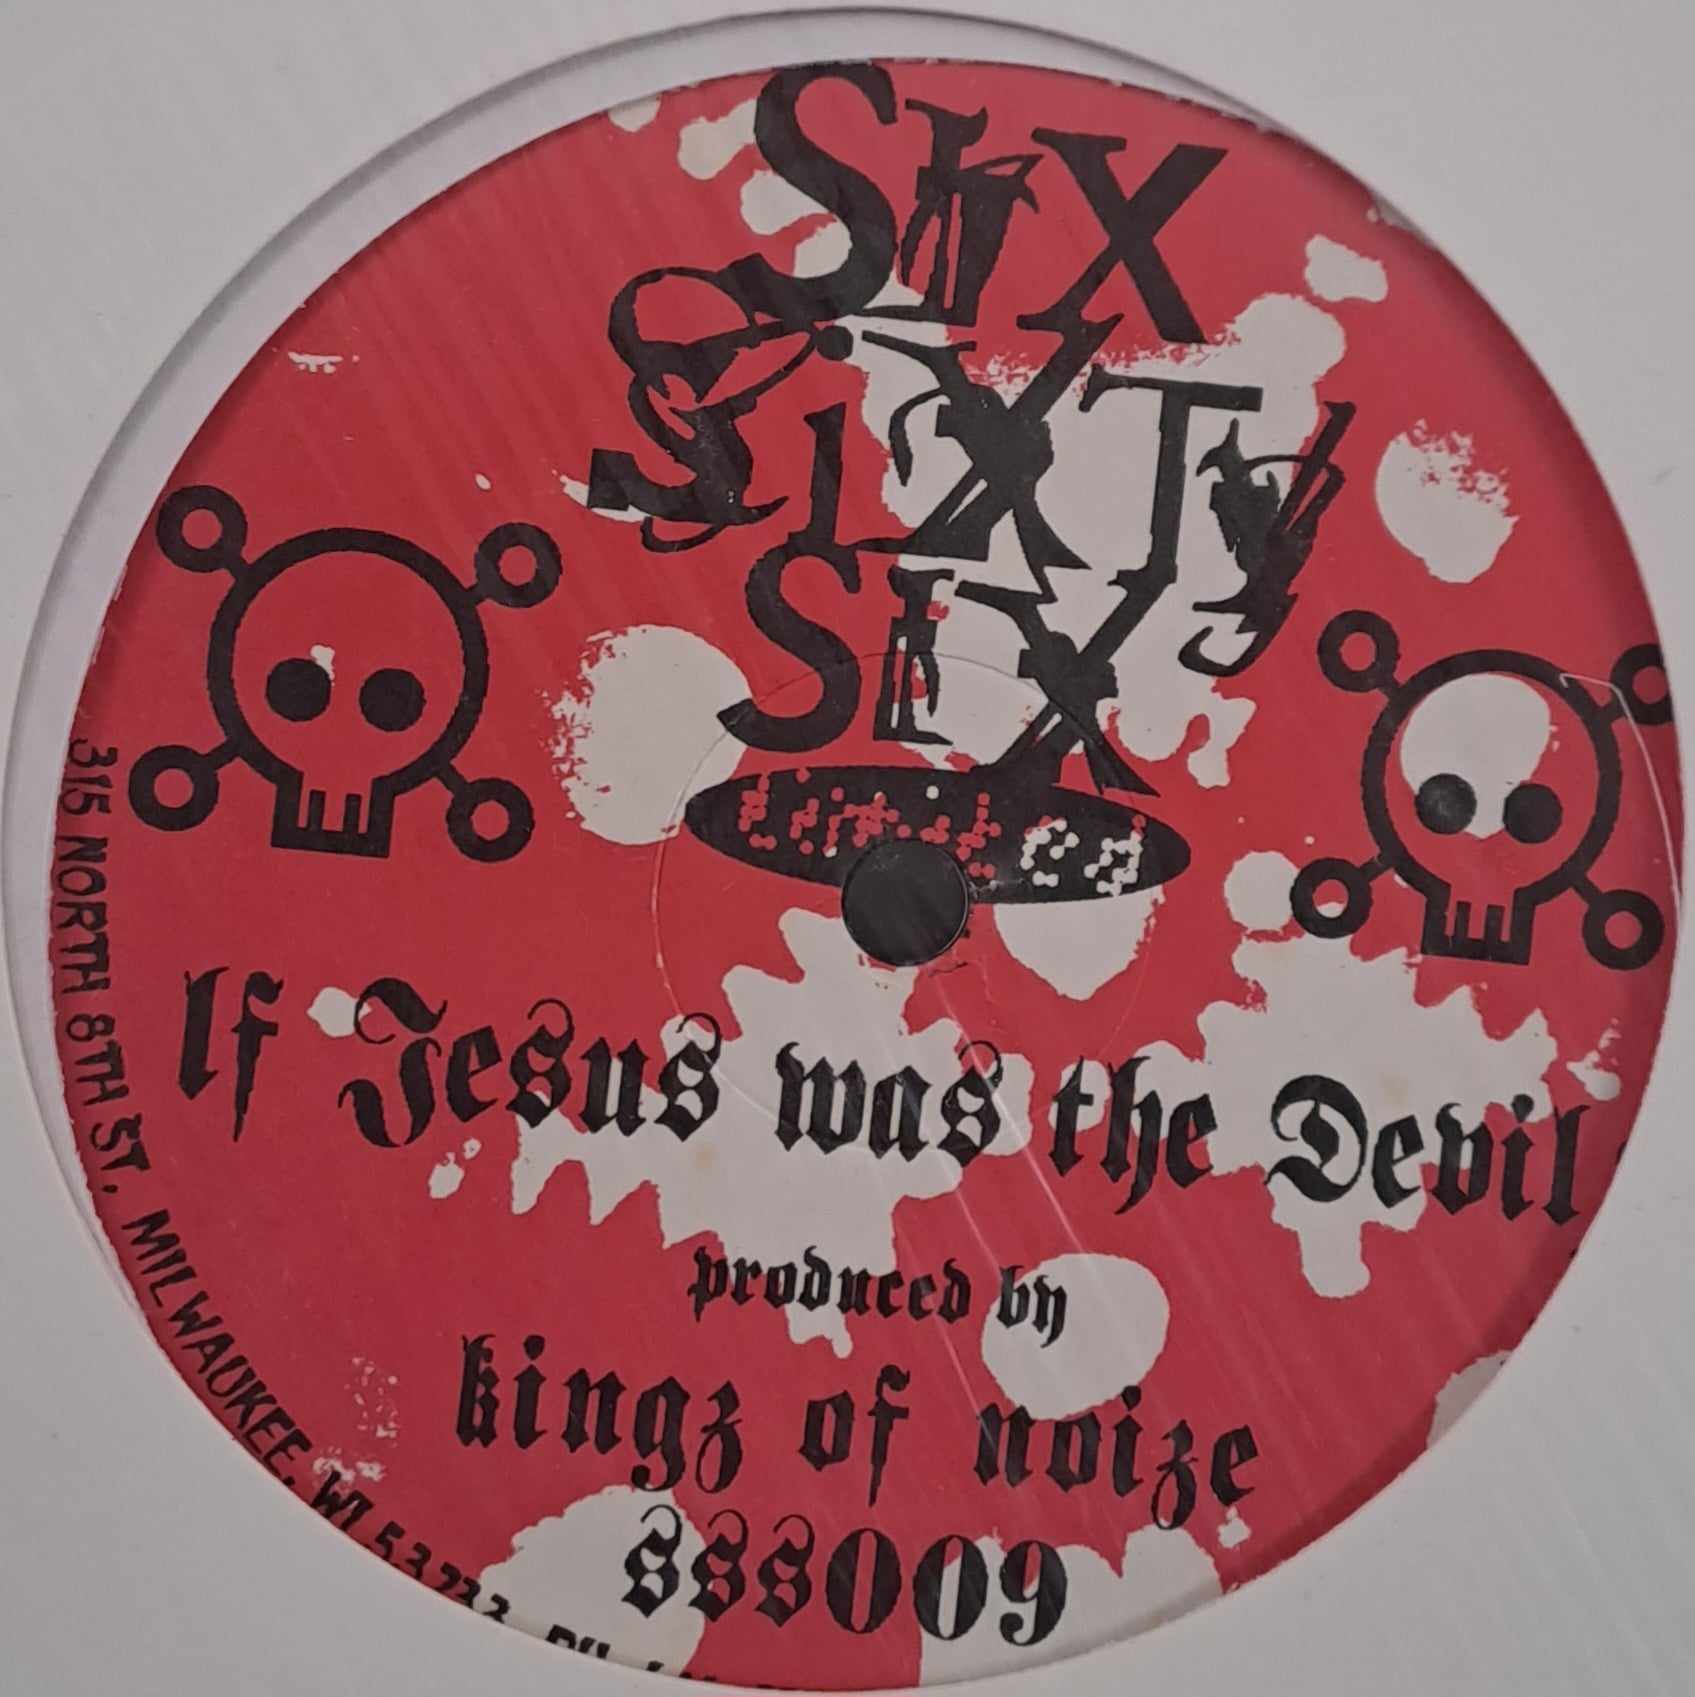 Six Sixty Six Limited 009 (une seule copie) - vinyle Expérimentale